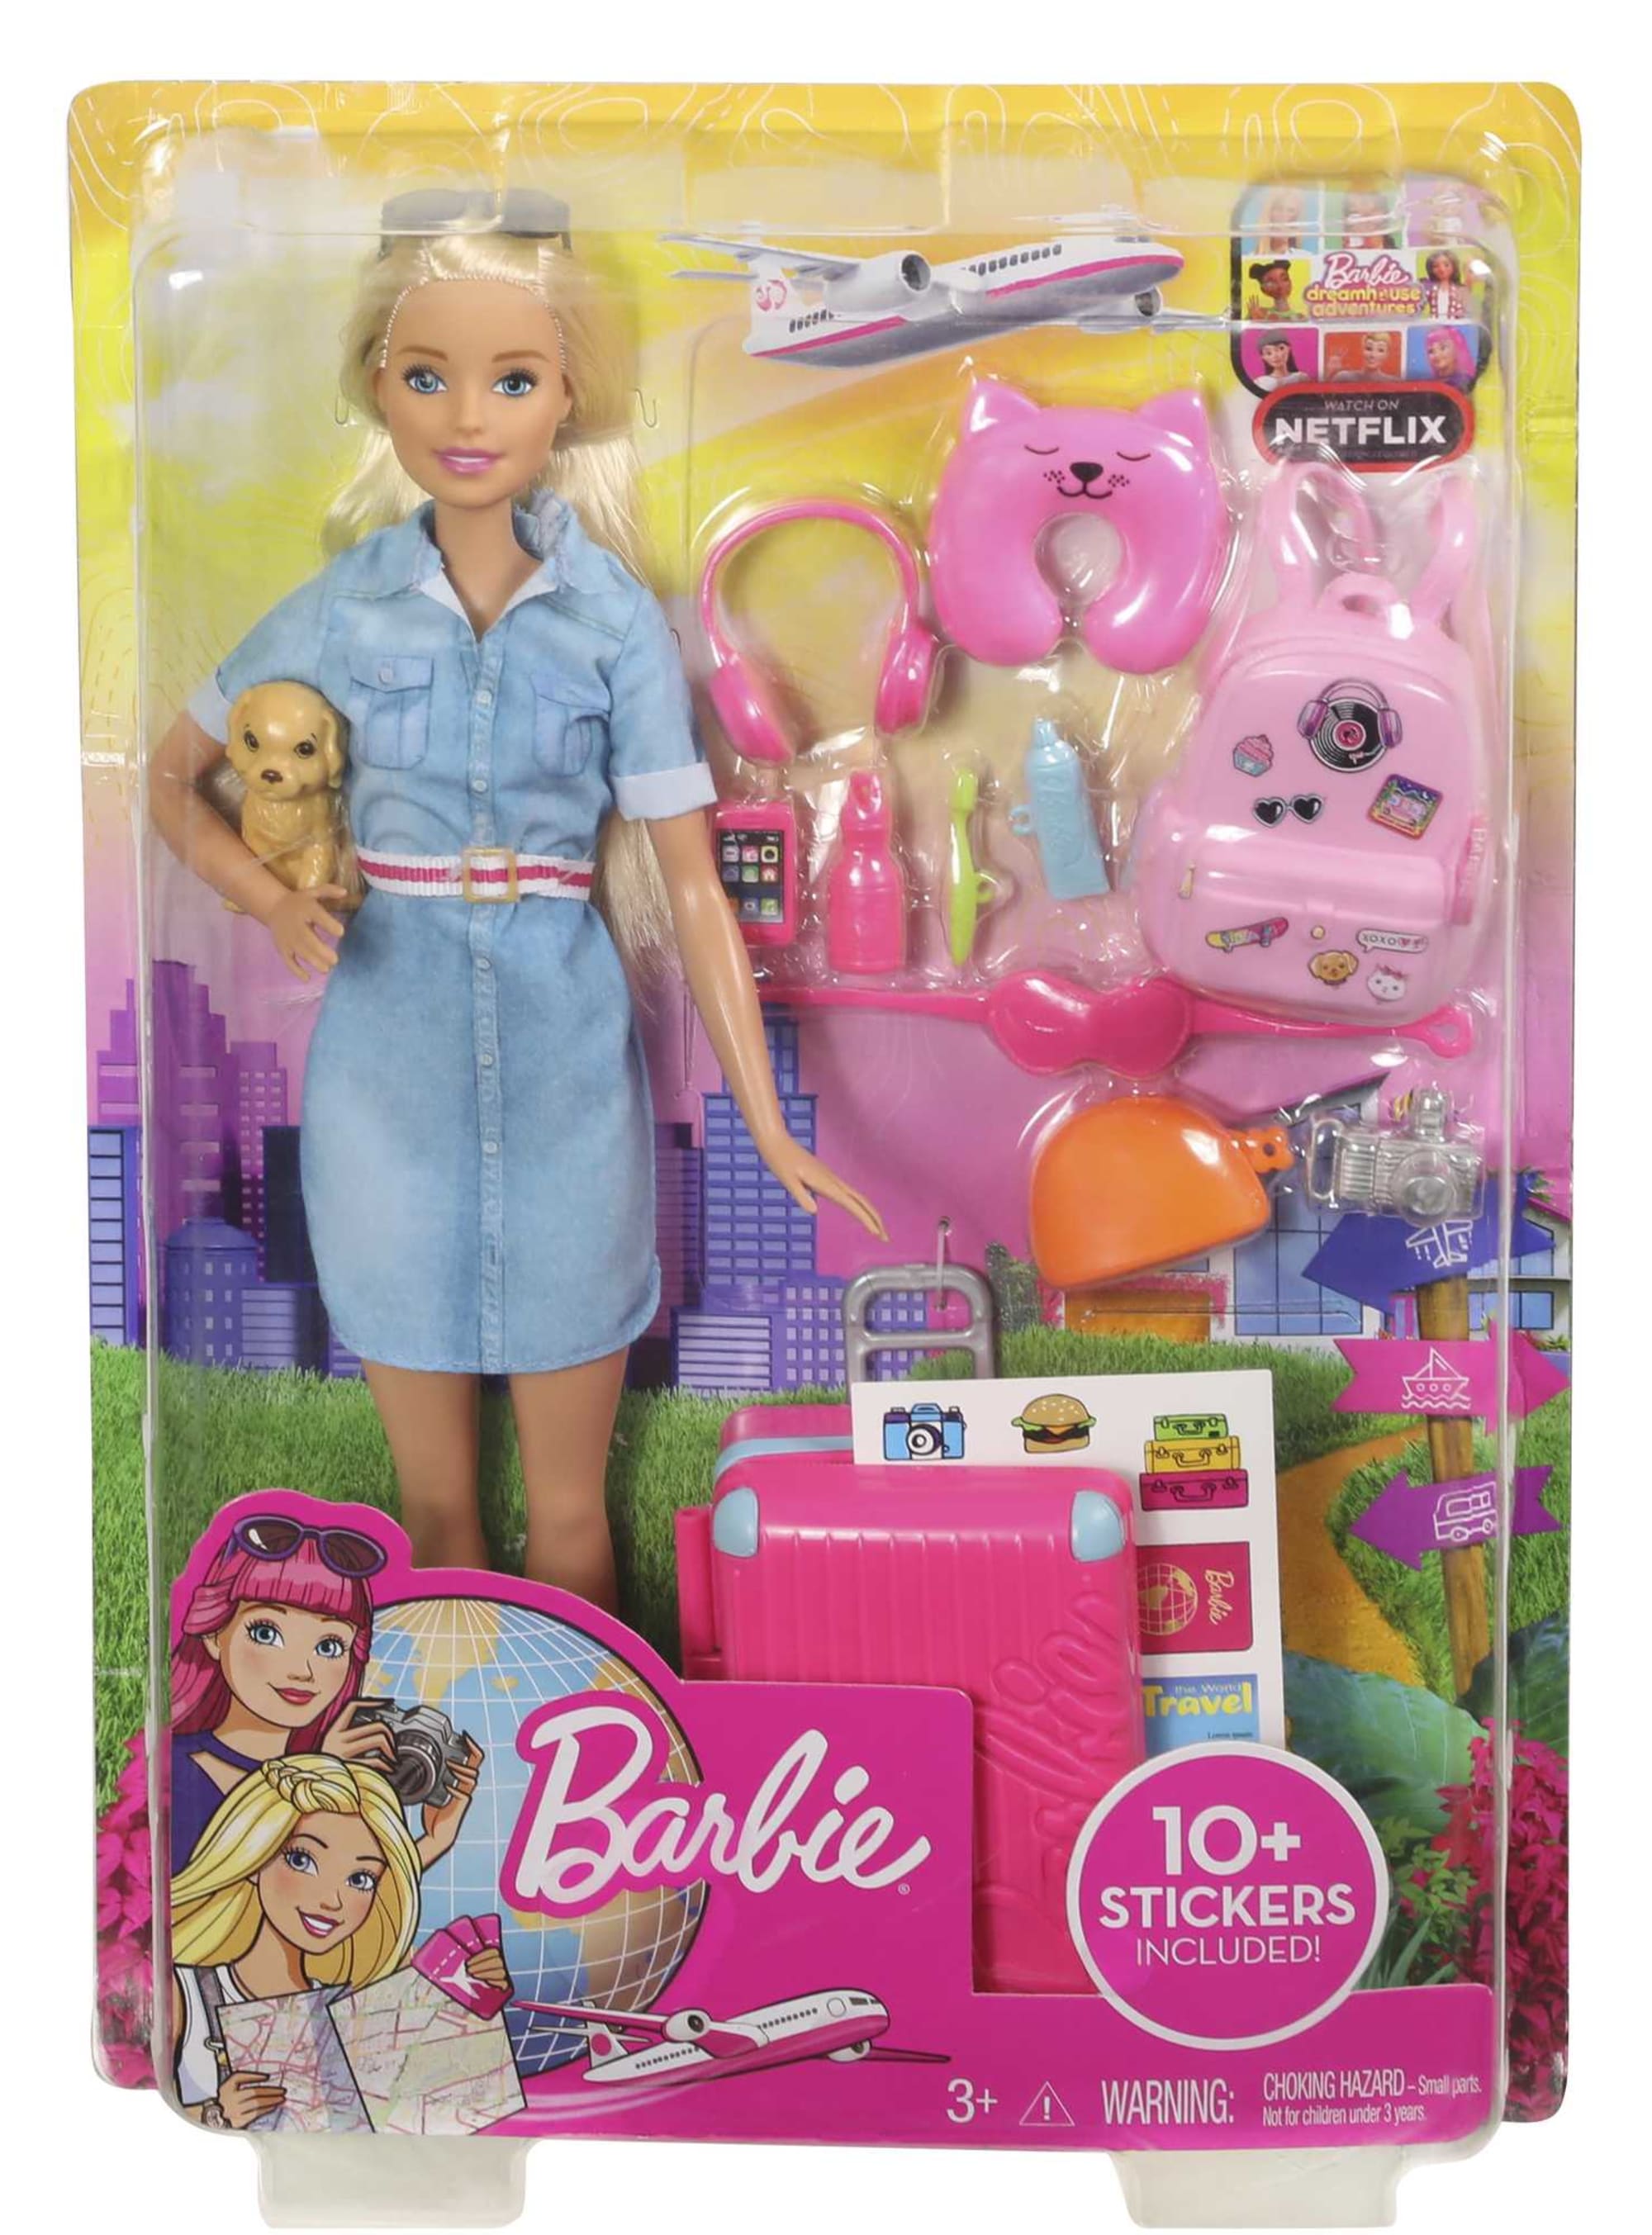 ② maison en valise transportable Mattel + Barbie et accessoire — Jouets